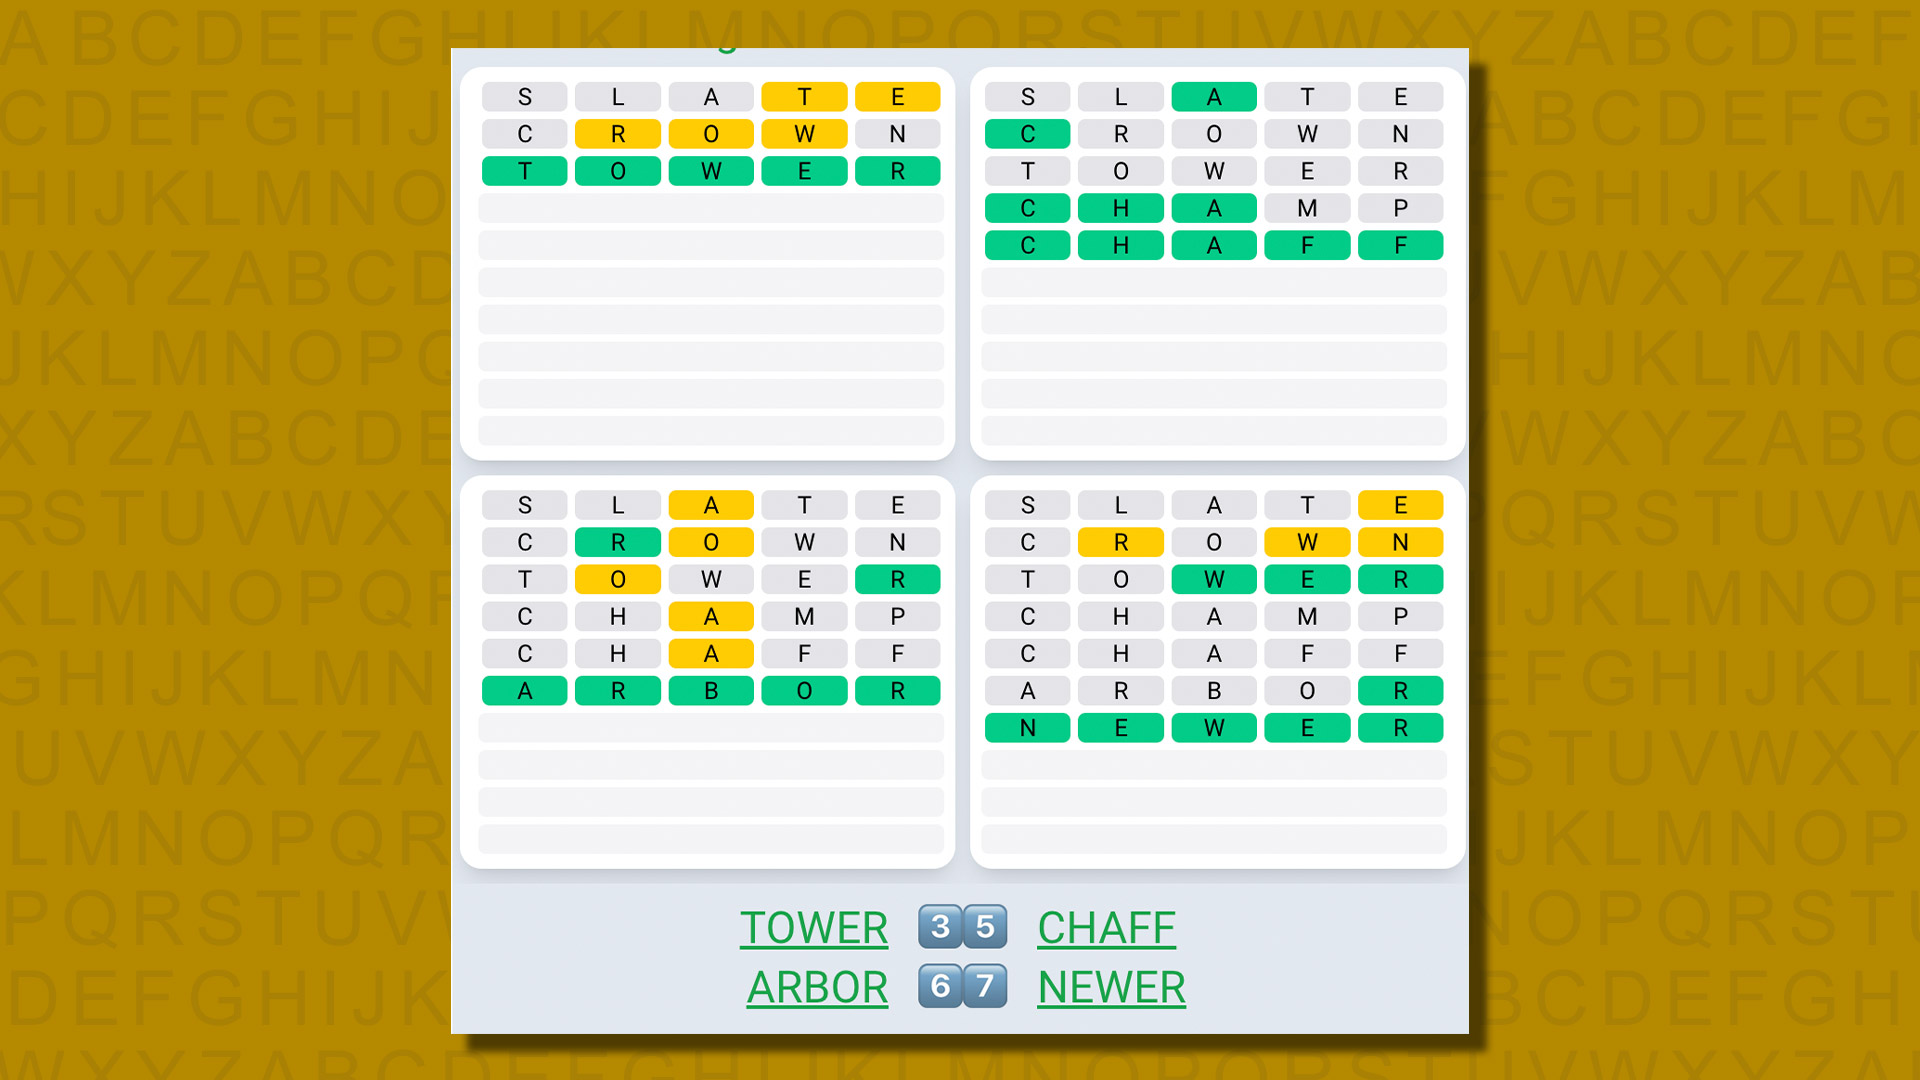 Ежедневная последовательность ответов Quordle для игры 585 на желтом фоне